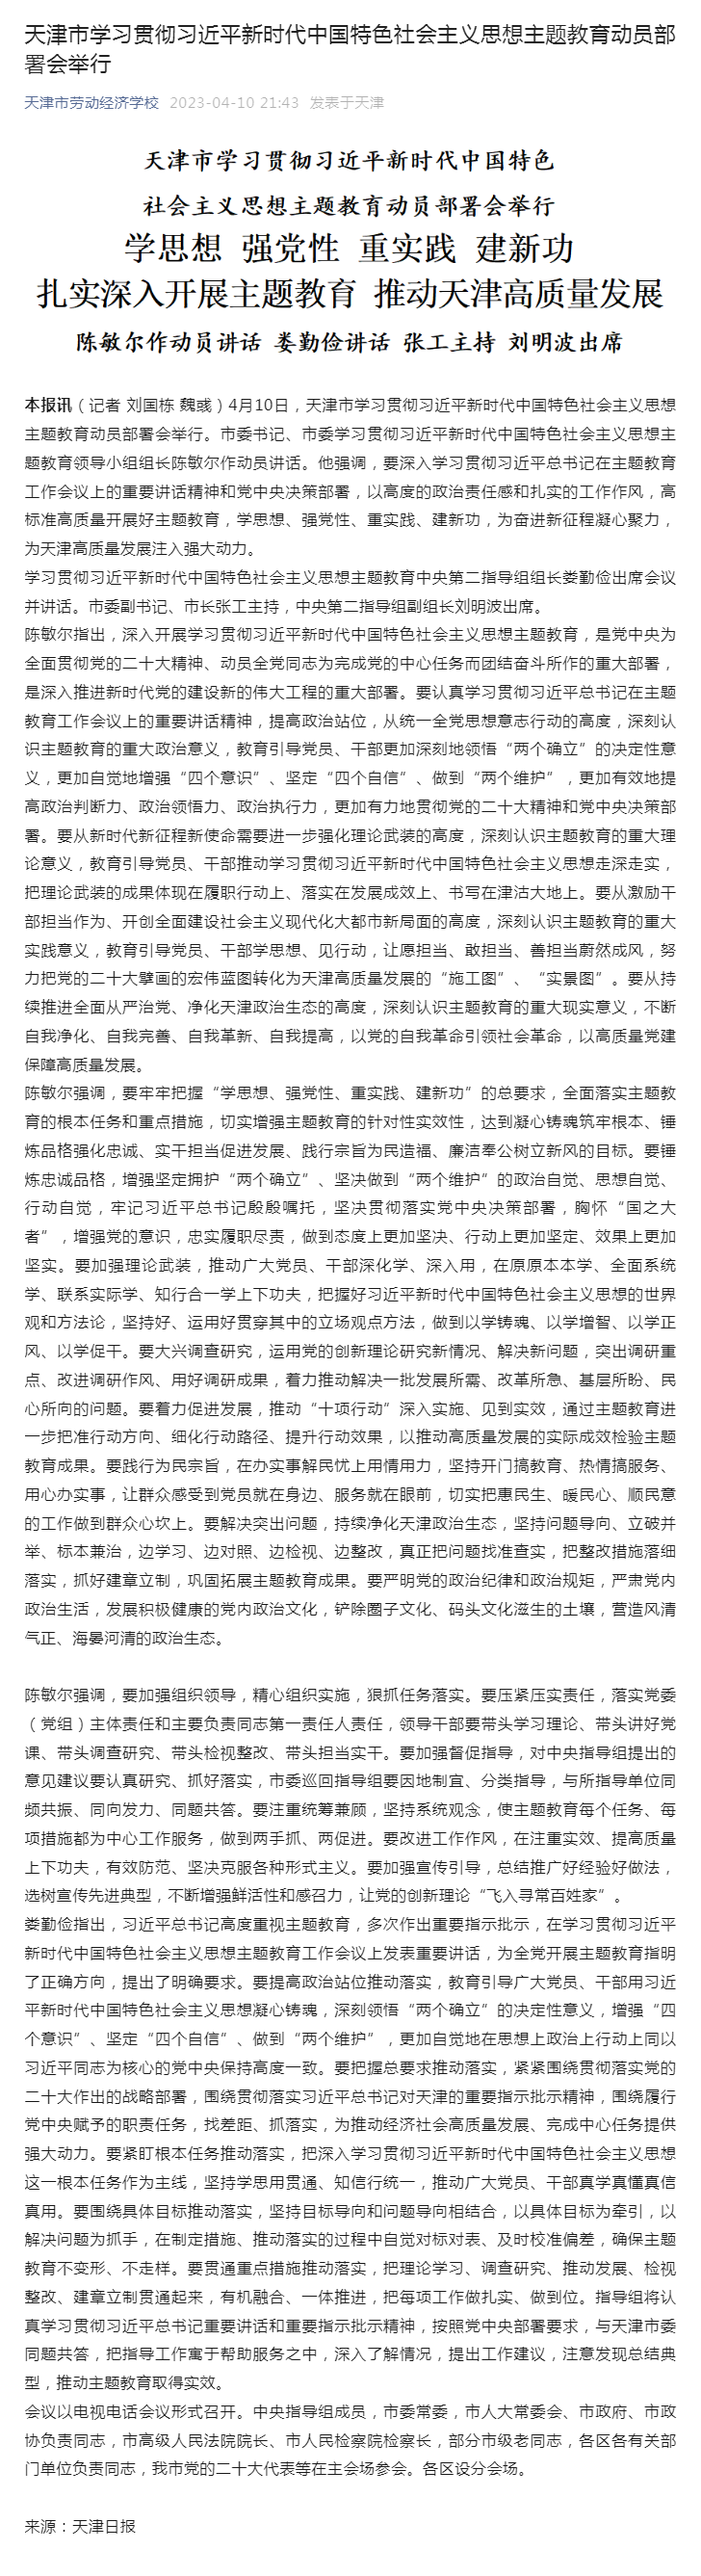 天津市学习贯彻习近平新时代中国特色社会主义思想主题教育动员部署会举行.png